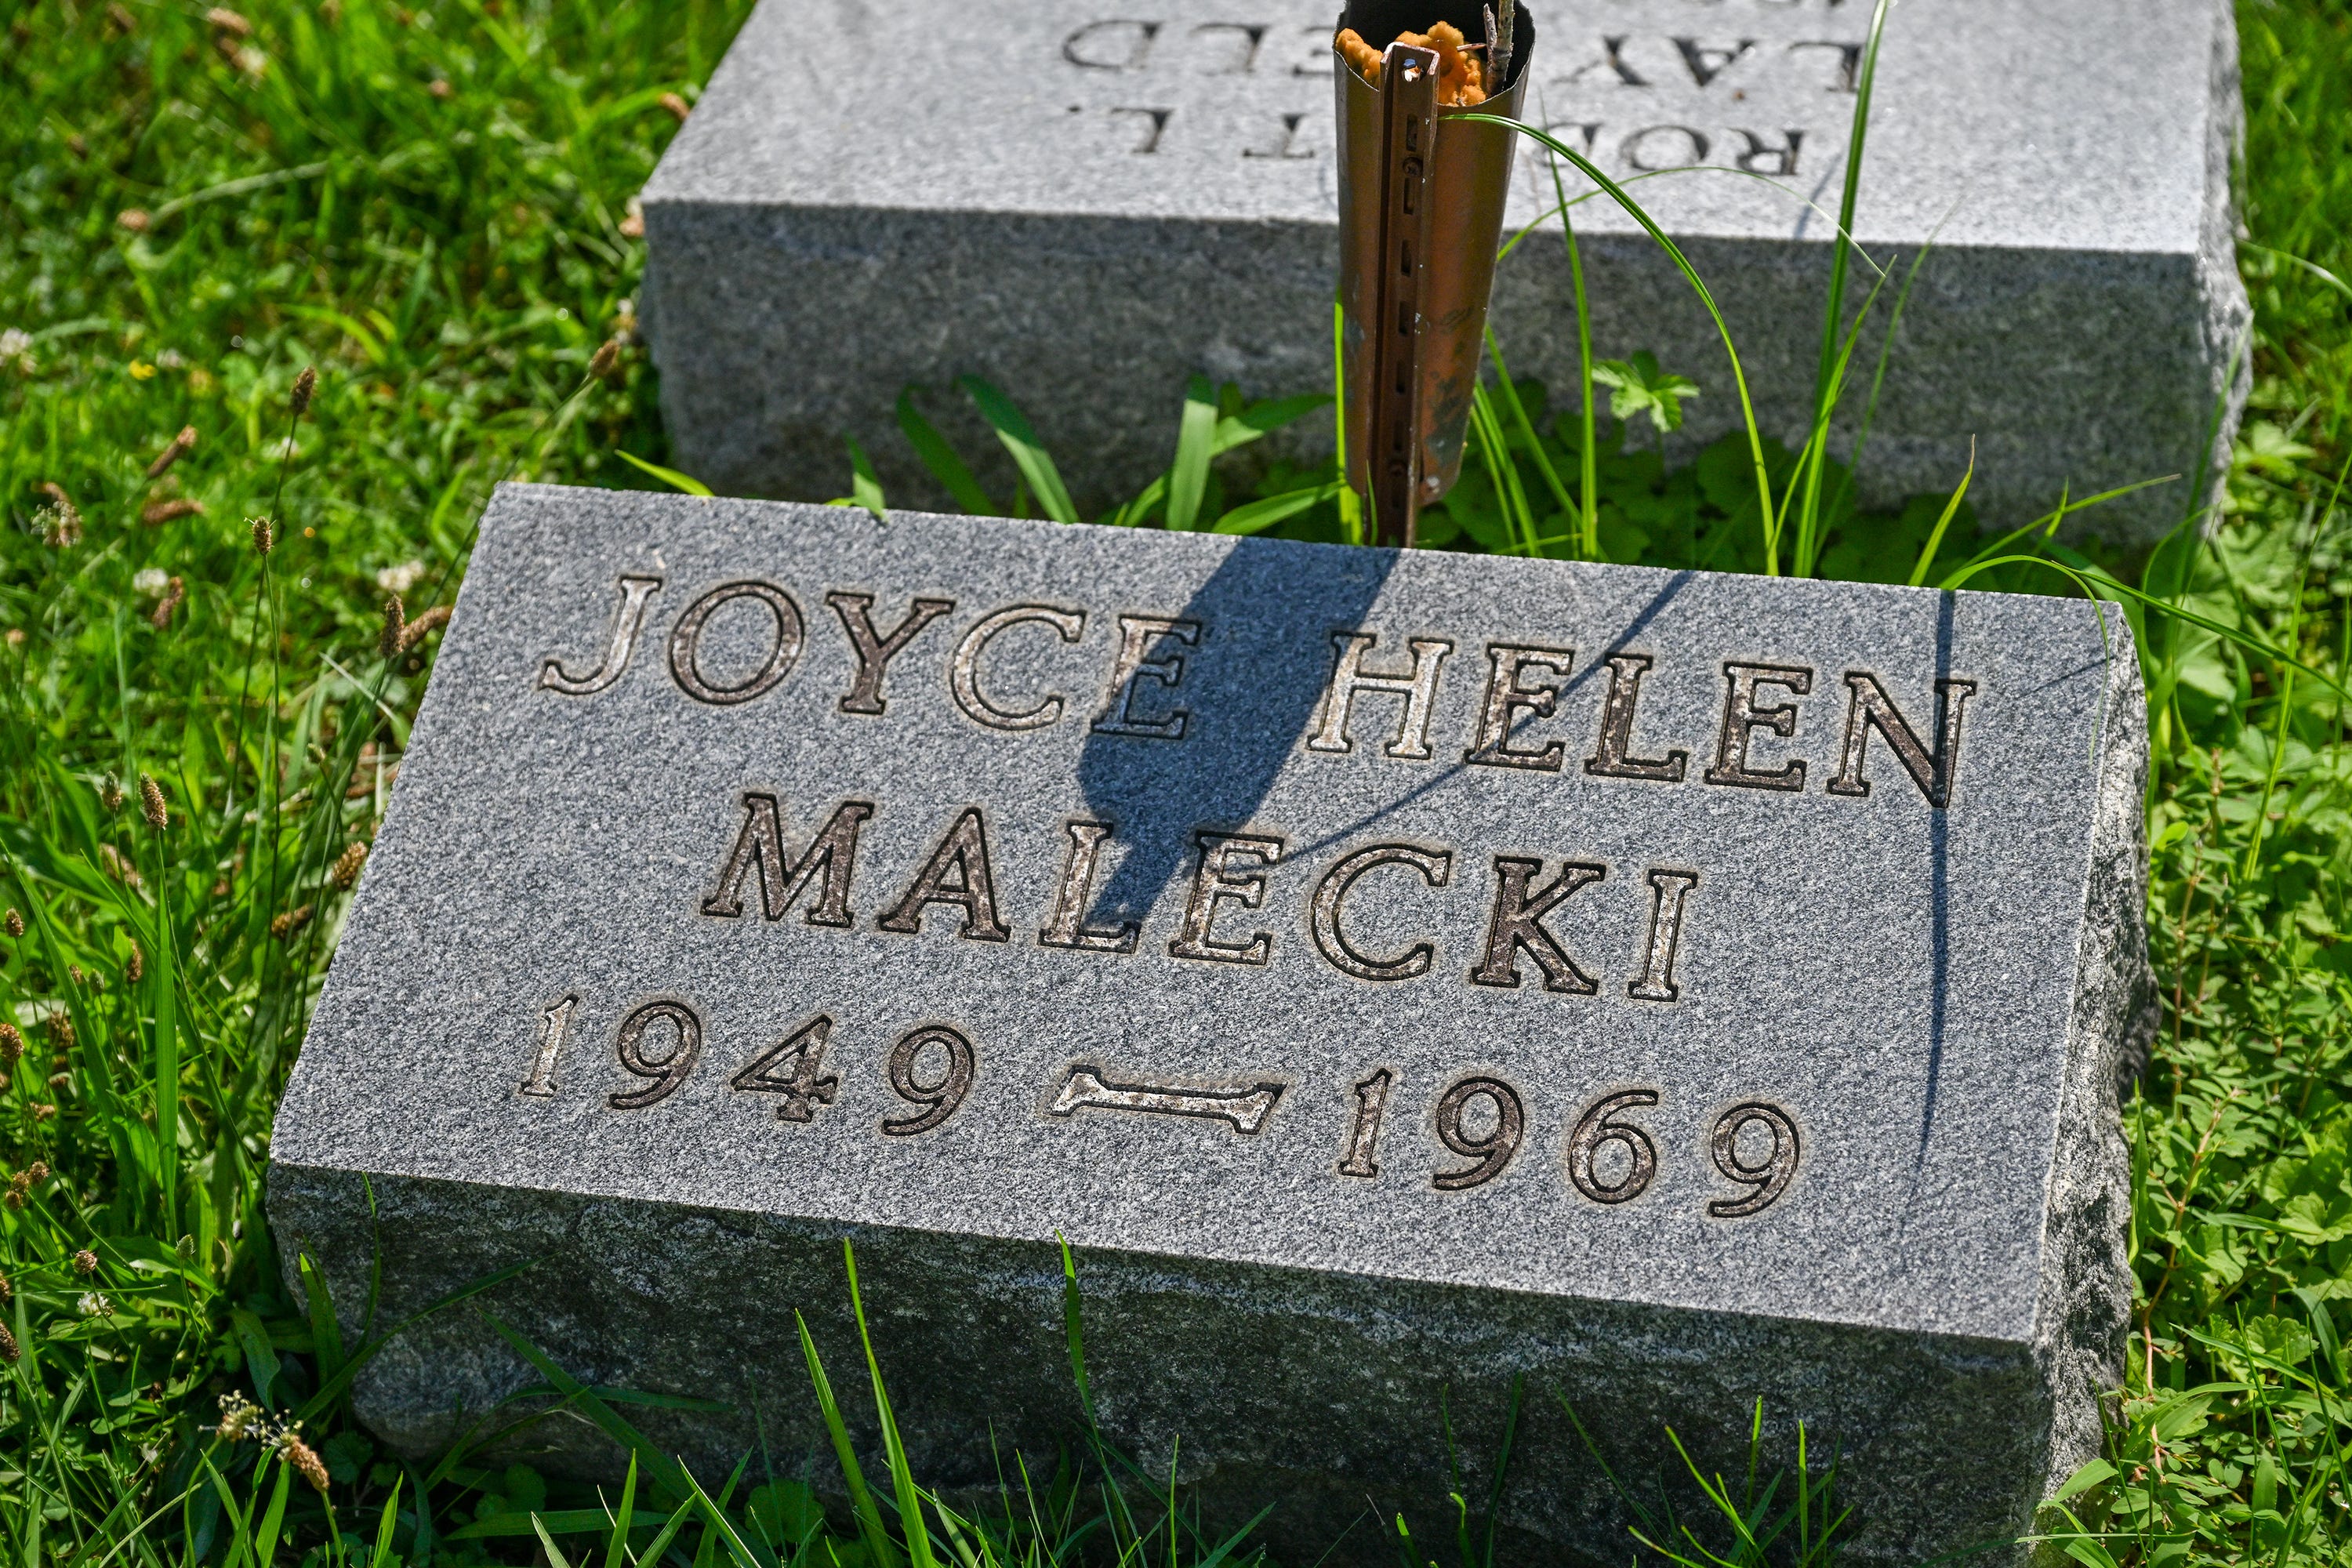 Die Leiche von Joyce Malecki wurde am Donnerstag exhumiert.  Malecki wurde 1969 ermordet und ihr Mörder könnte der Priester aus der Netflix-Serie „The Keepers“ sein.